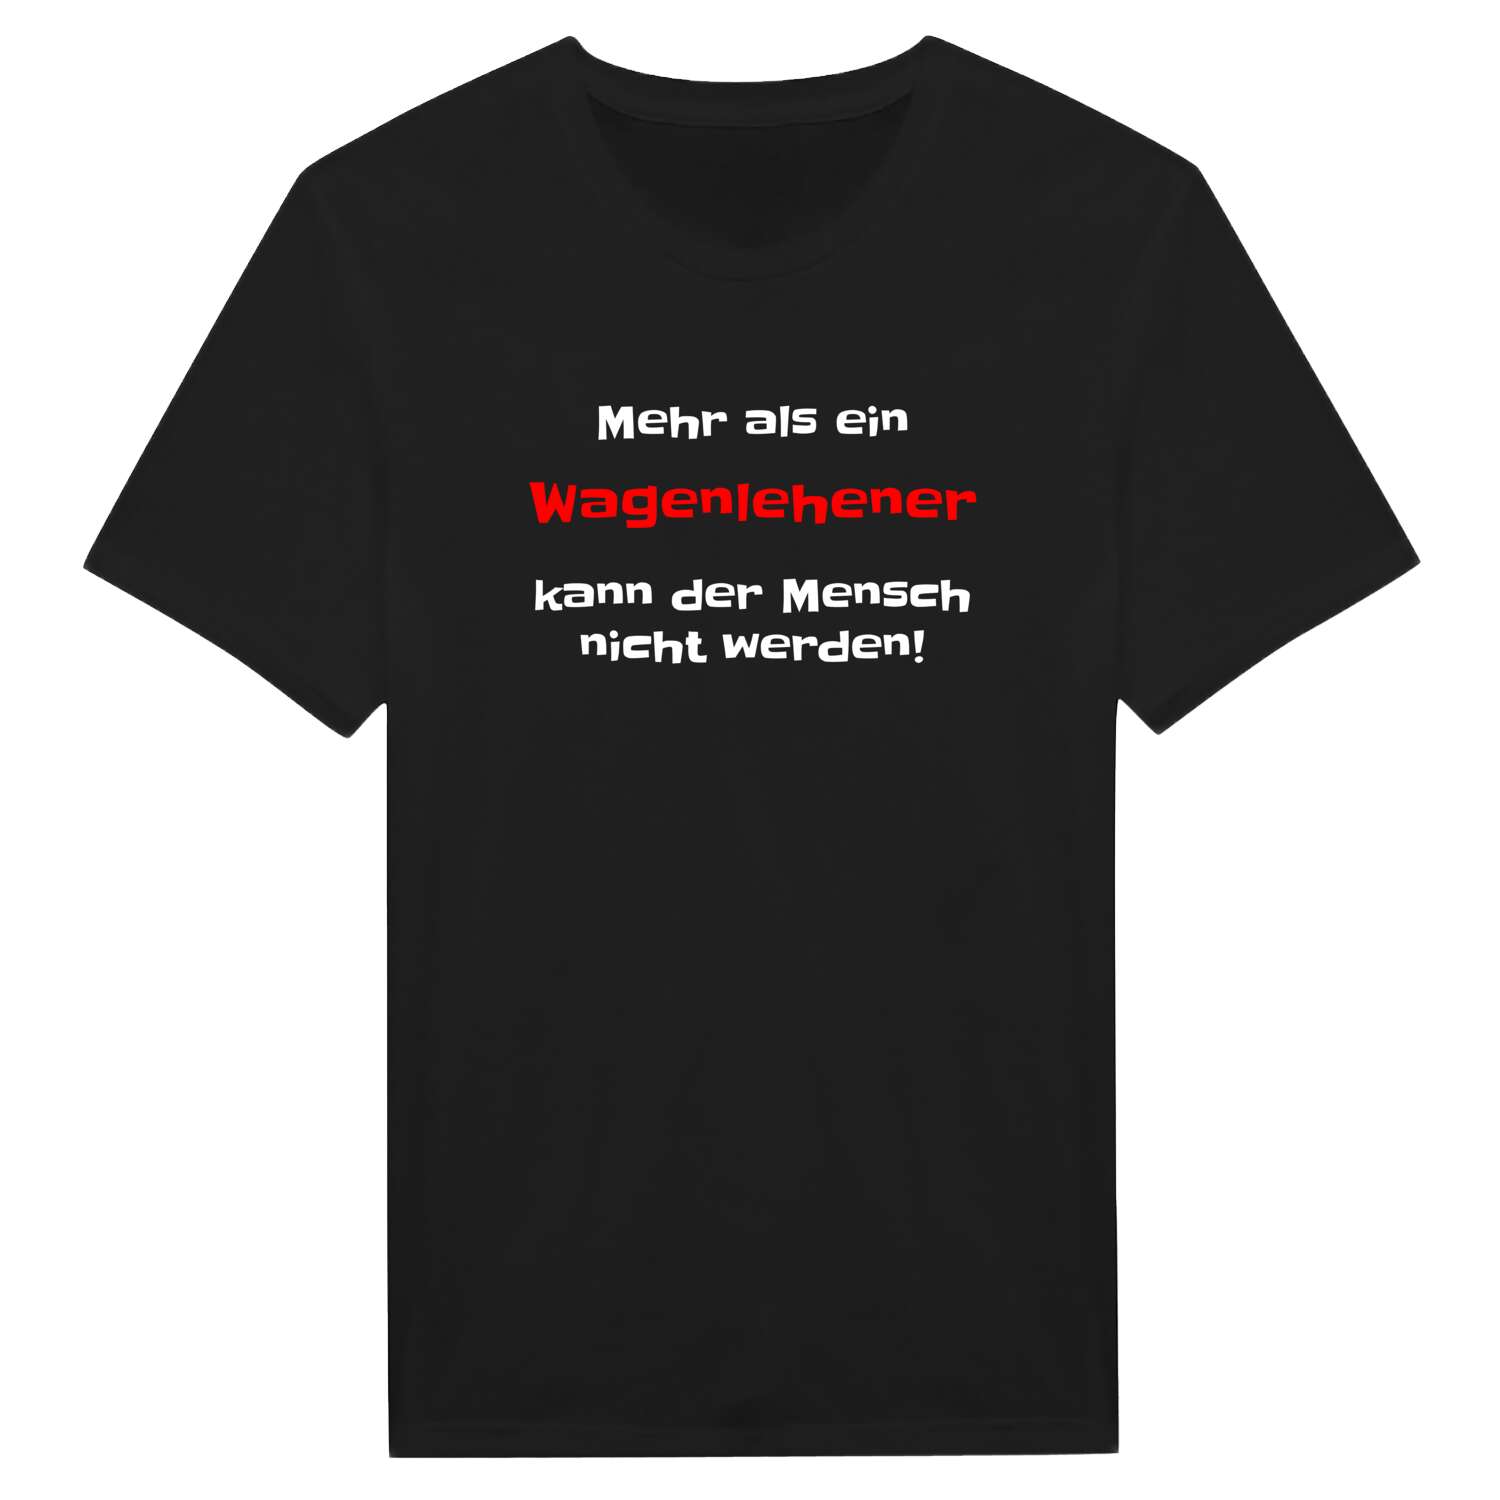 Wagenlehen T-Shirt »Mehr als ein«